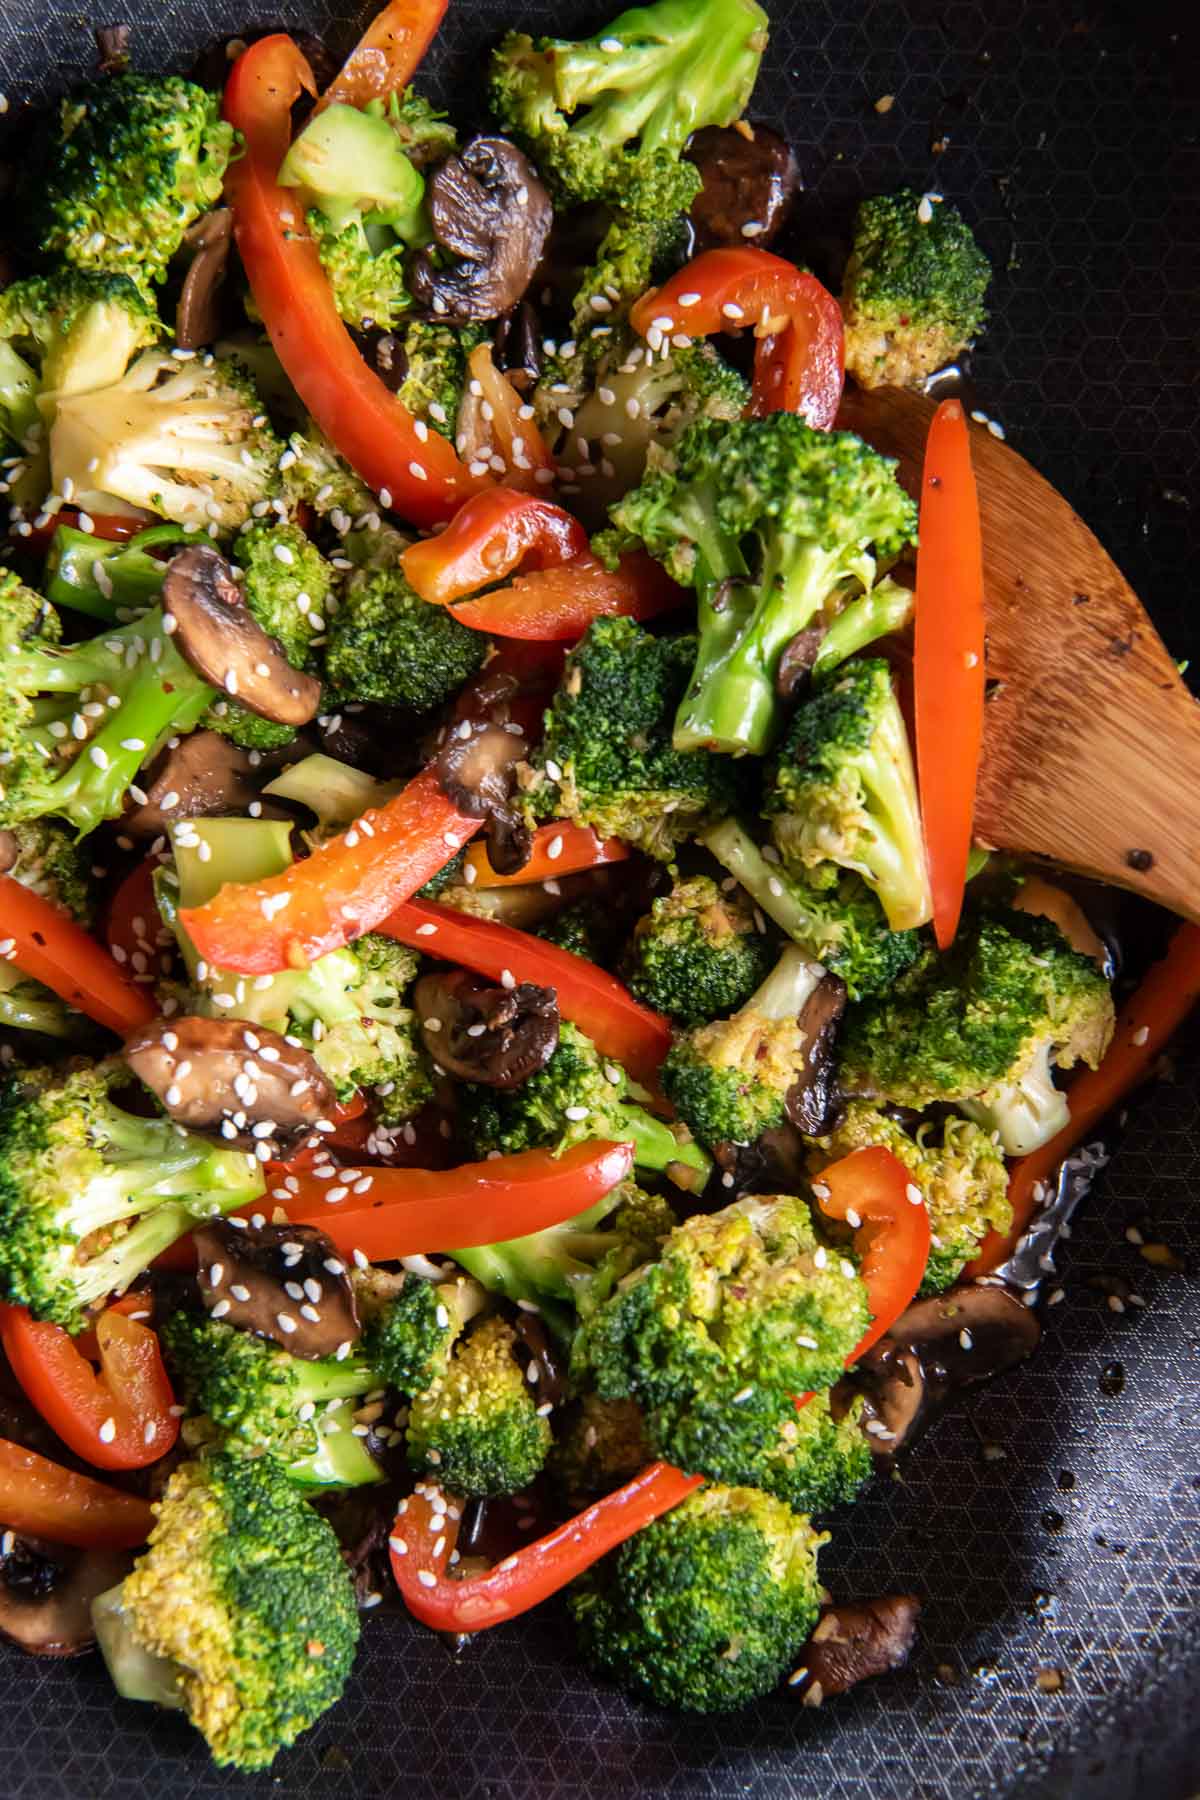 Broccoli stir fry in a skillet.